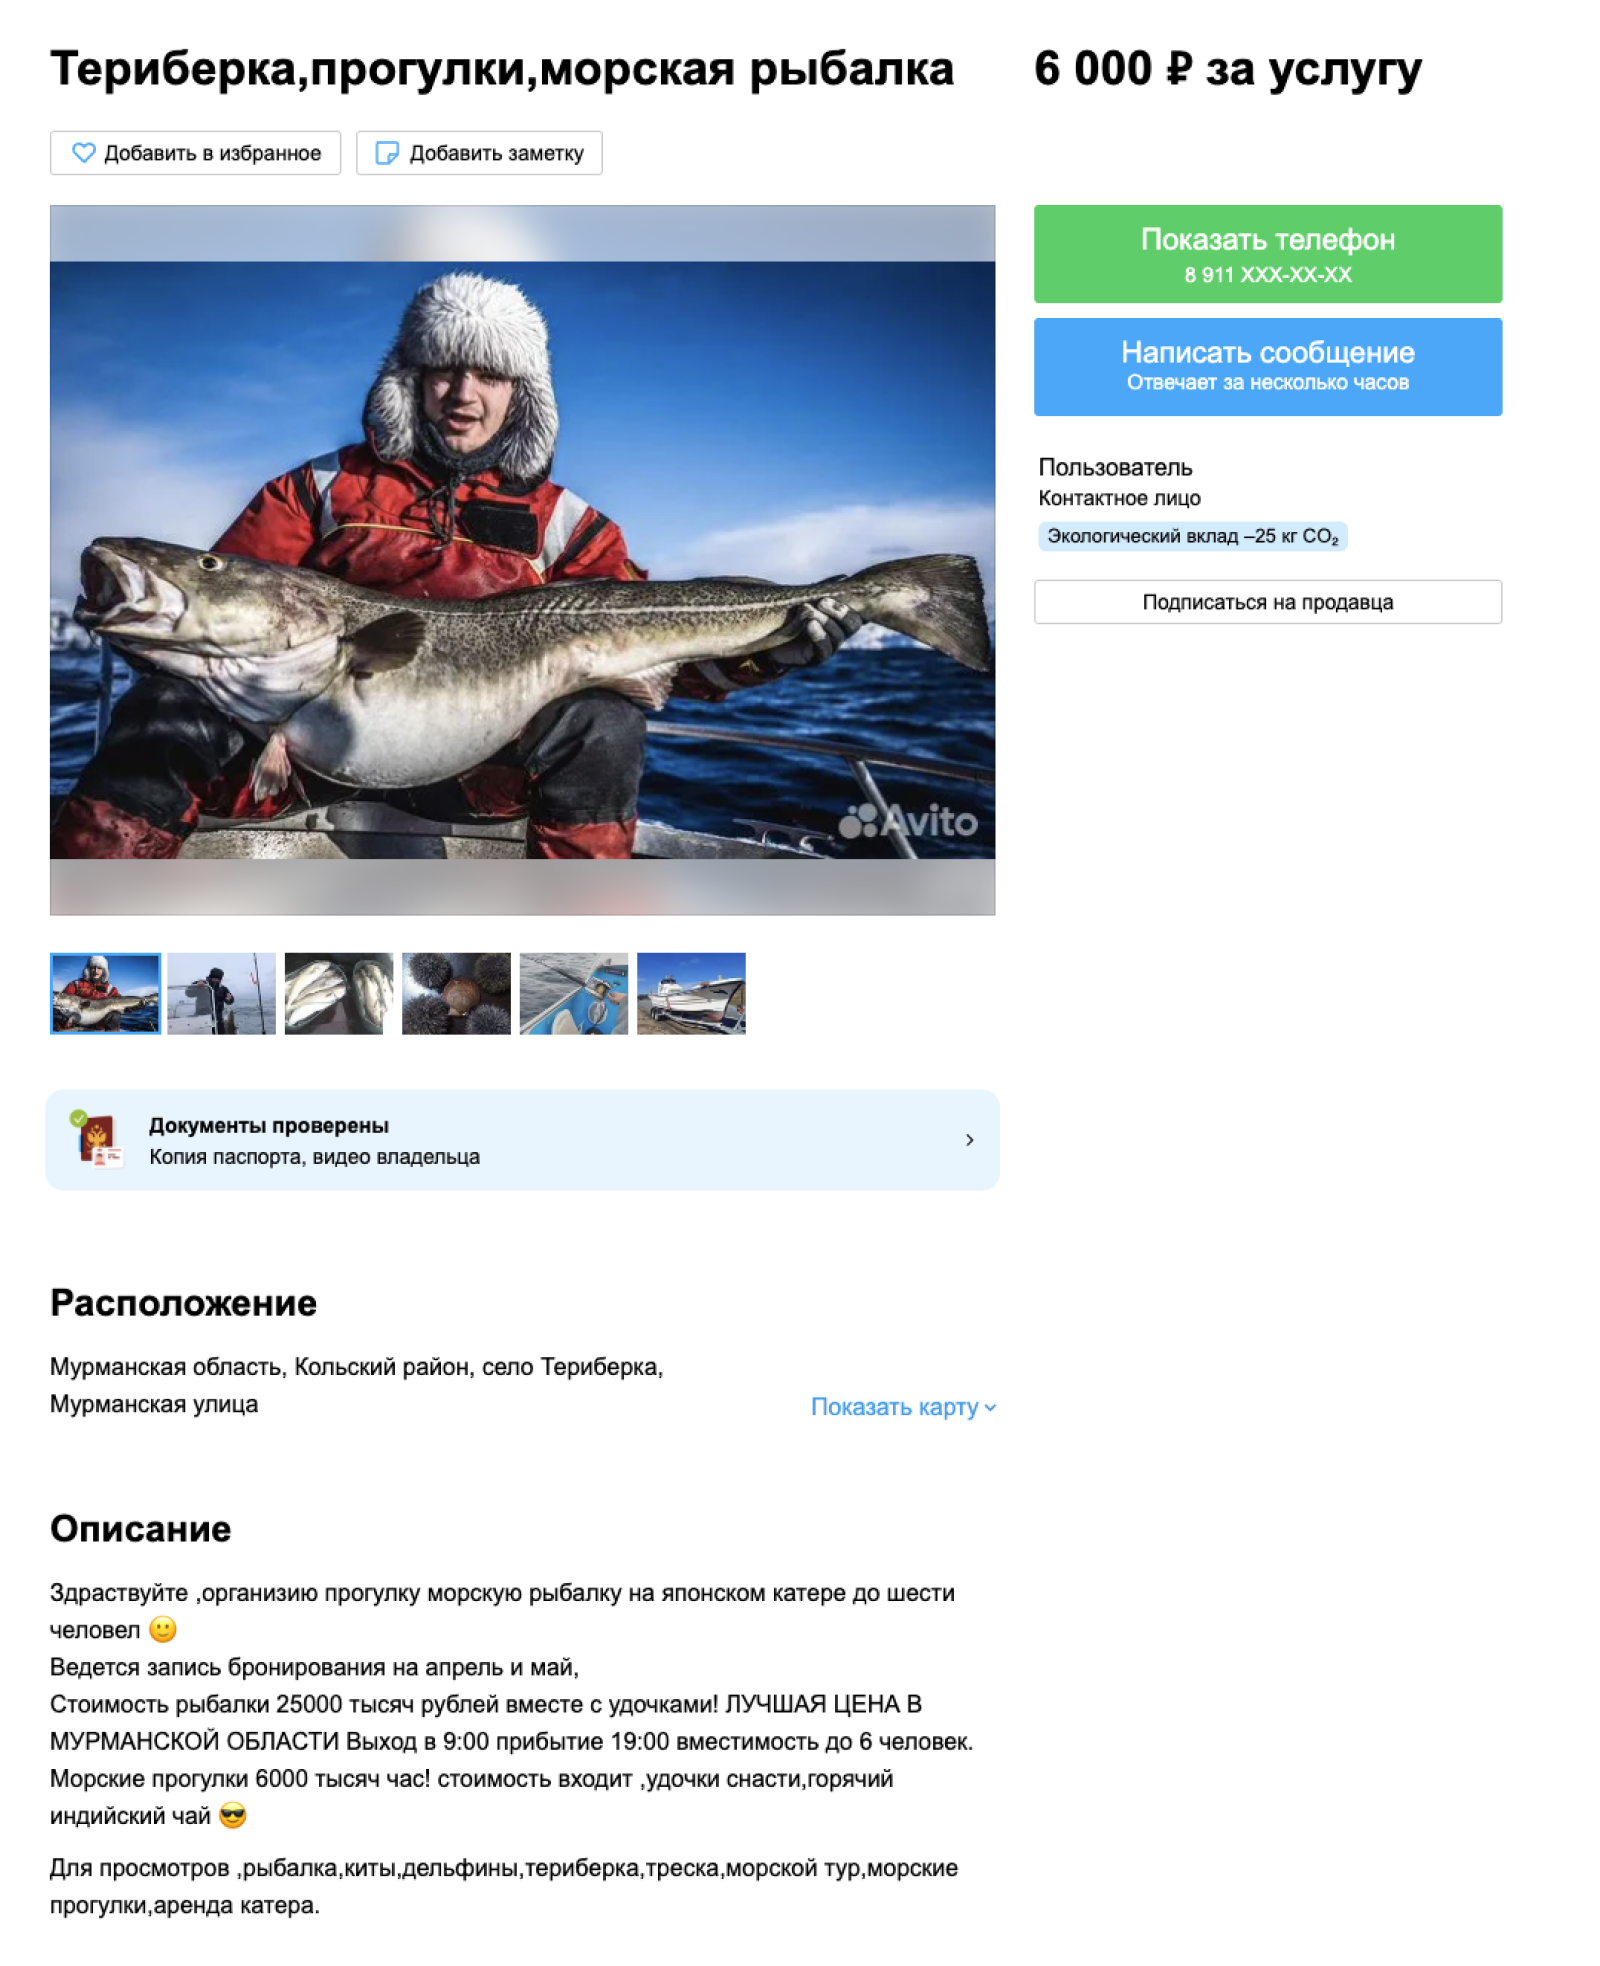 Цены на морскую рыбалку в Териберке разные. Источник: avito.ru